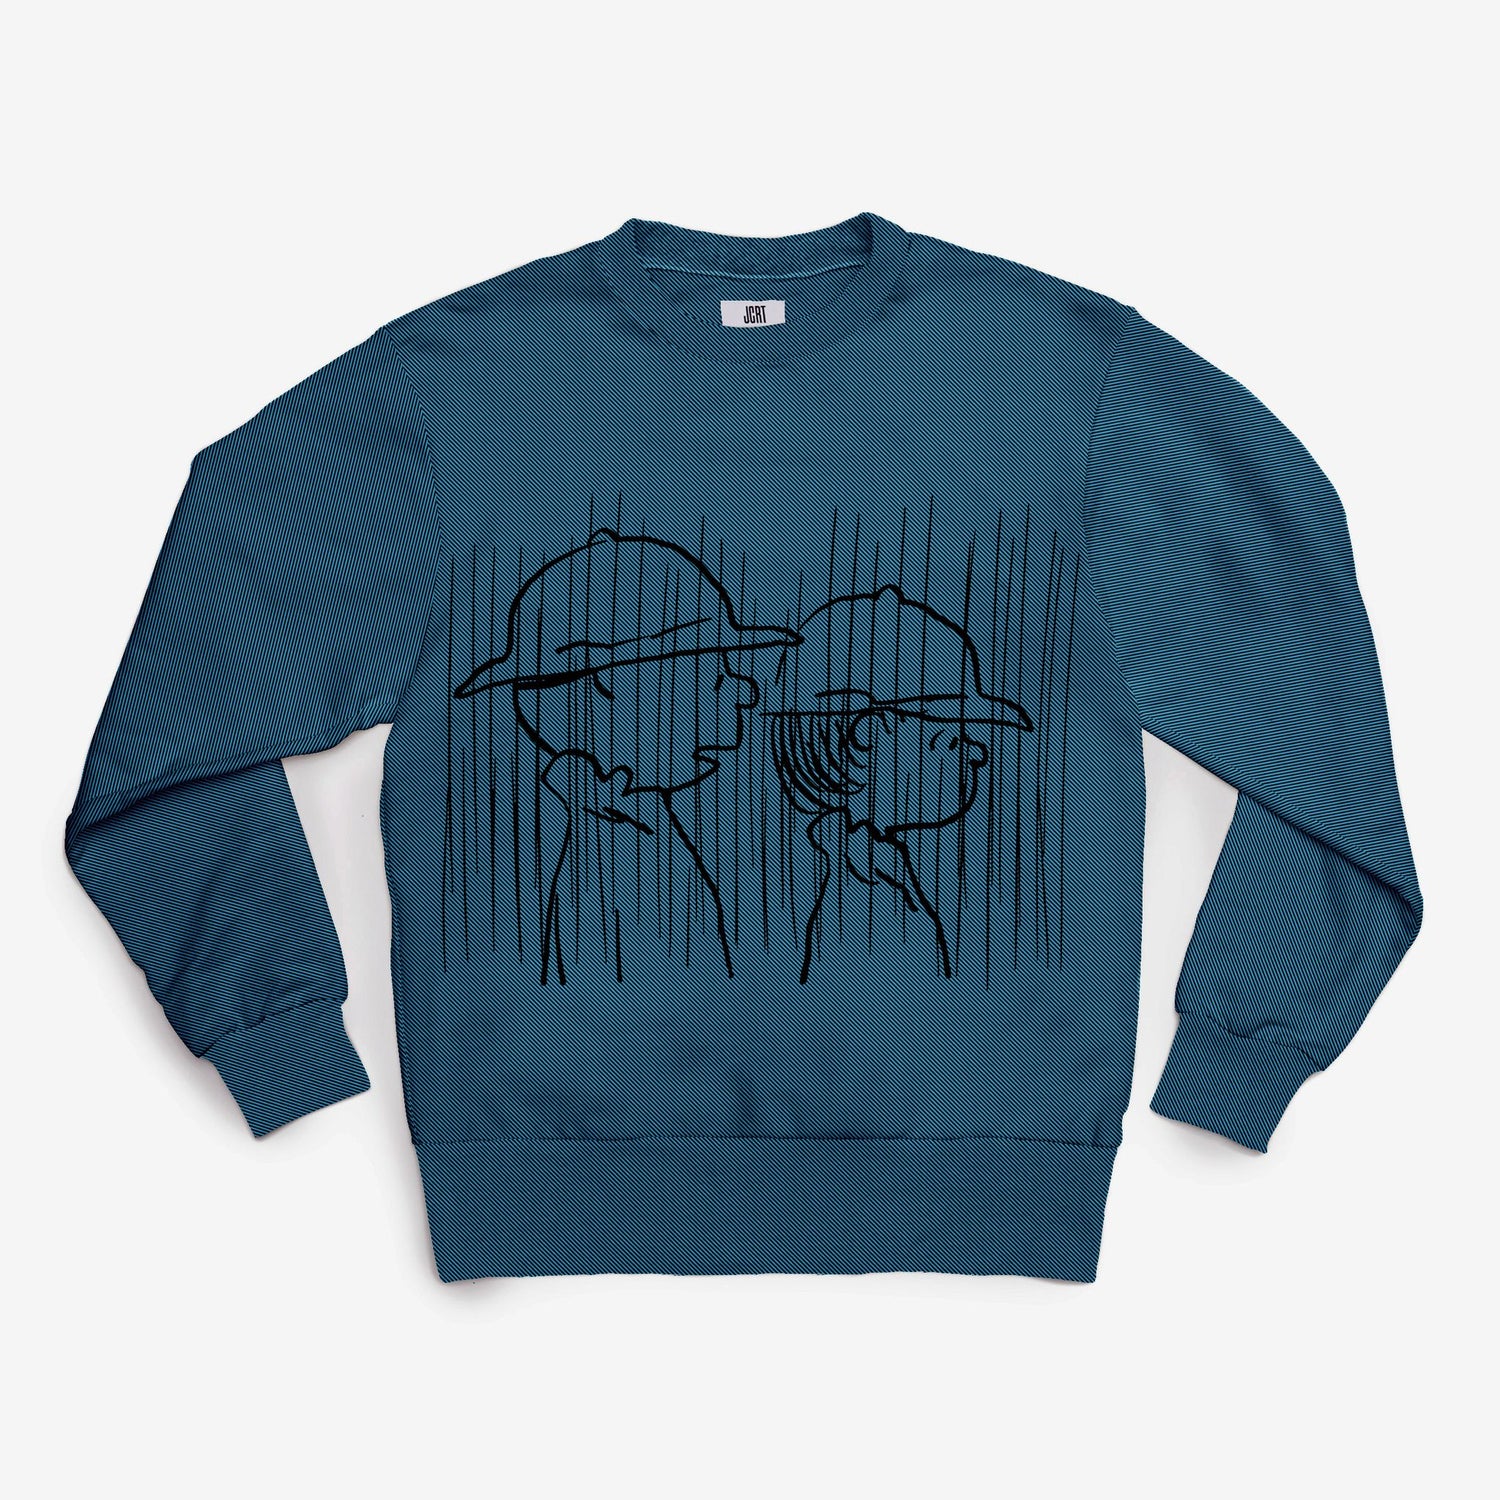 The Peanuts Rain Sweatshirt